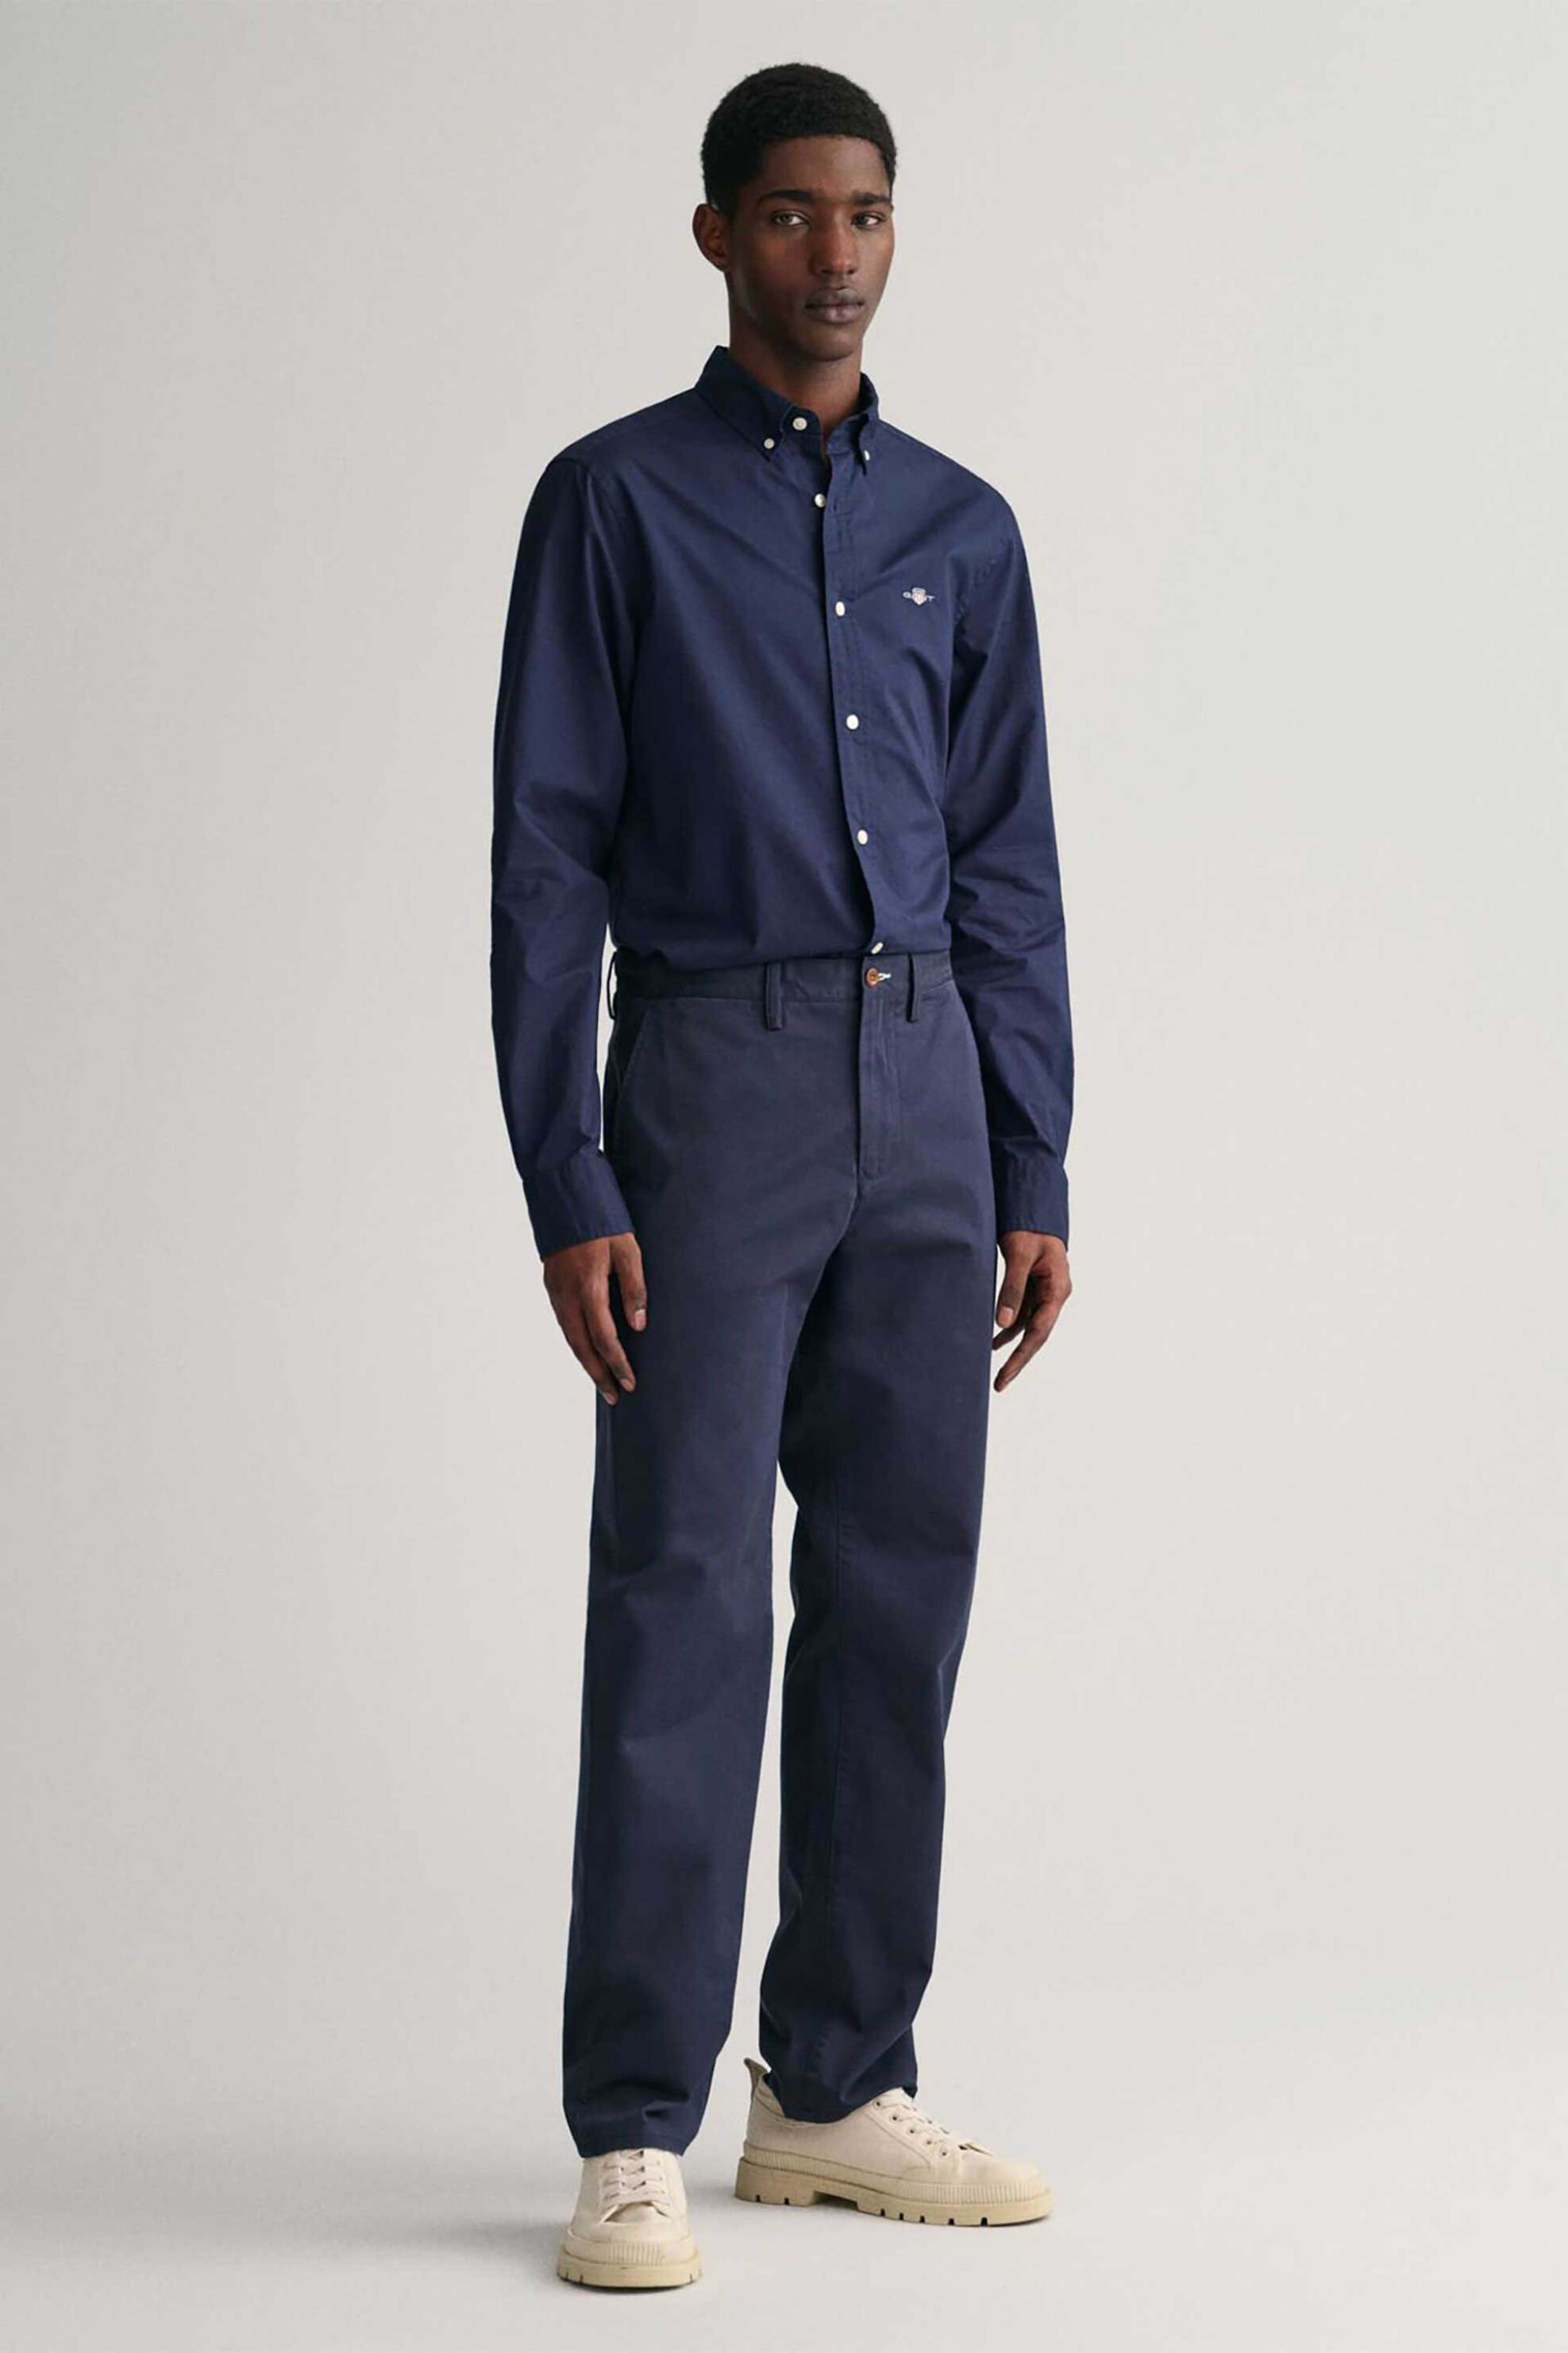 Ανδρική Μόδα > Ανδρικά Ρούχα > Ανδρικά Παντελόνια > Ανδρικά Παντελόνια Chinos Gant ανδρικό chino παντελόνι Regular Fit (34L) - 1505222 Μπλε Σκούρο